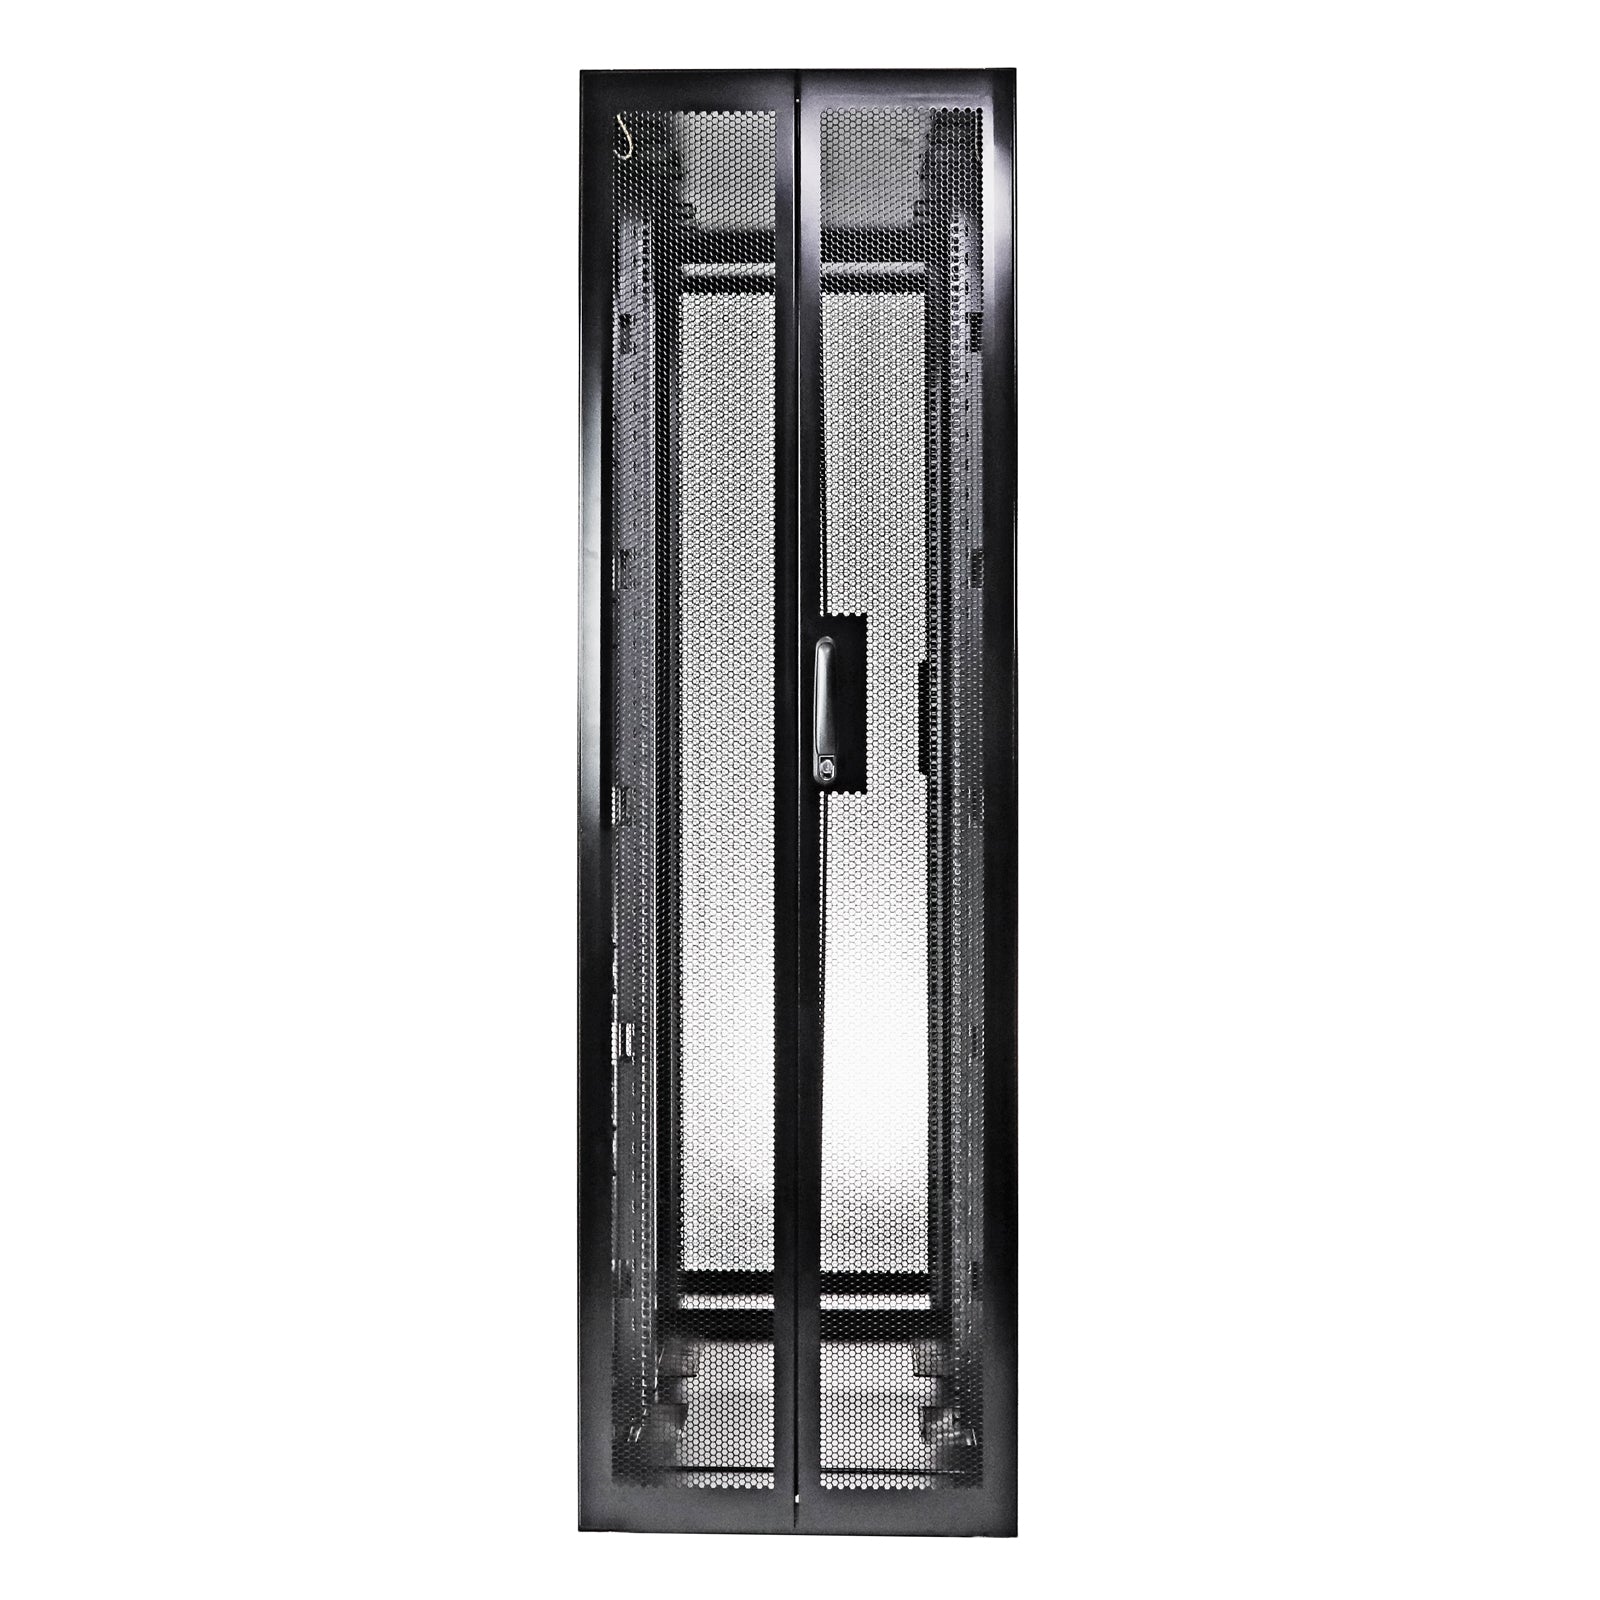 Aeons PF Seires NetMax 42U Premium Server Rack Enclosure Cabinet, Extra-Depth, Secure Modular Data Center